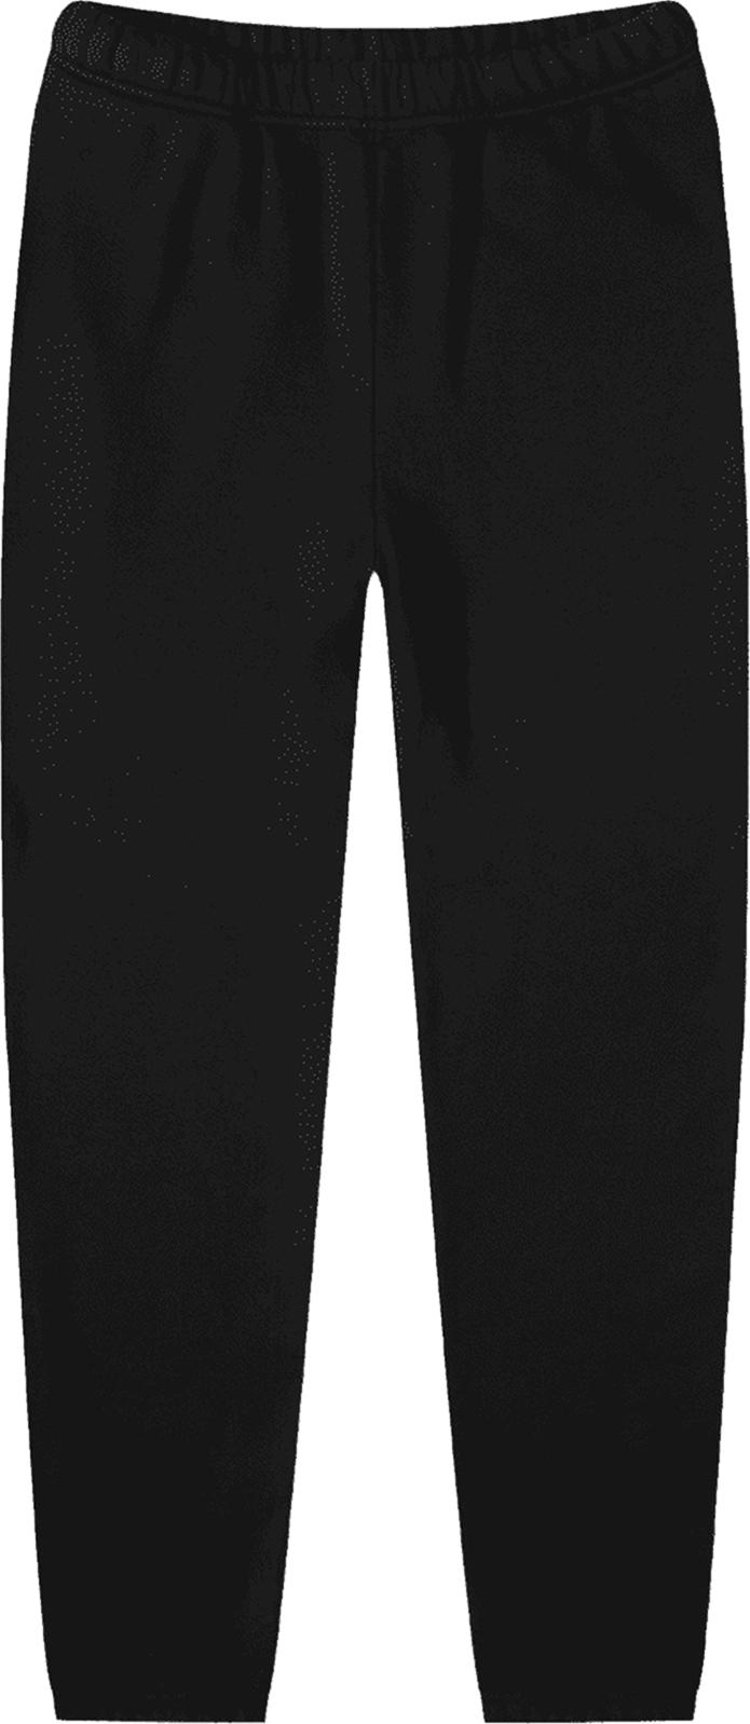 Спортивные брюки Les Tien Classic Sweatpants 'Jet Black', черный спортивные брюки burberry shark appliqué sweatpants black черный